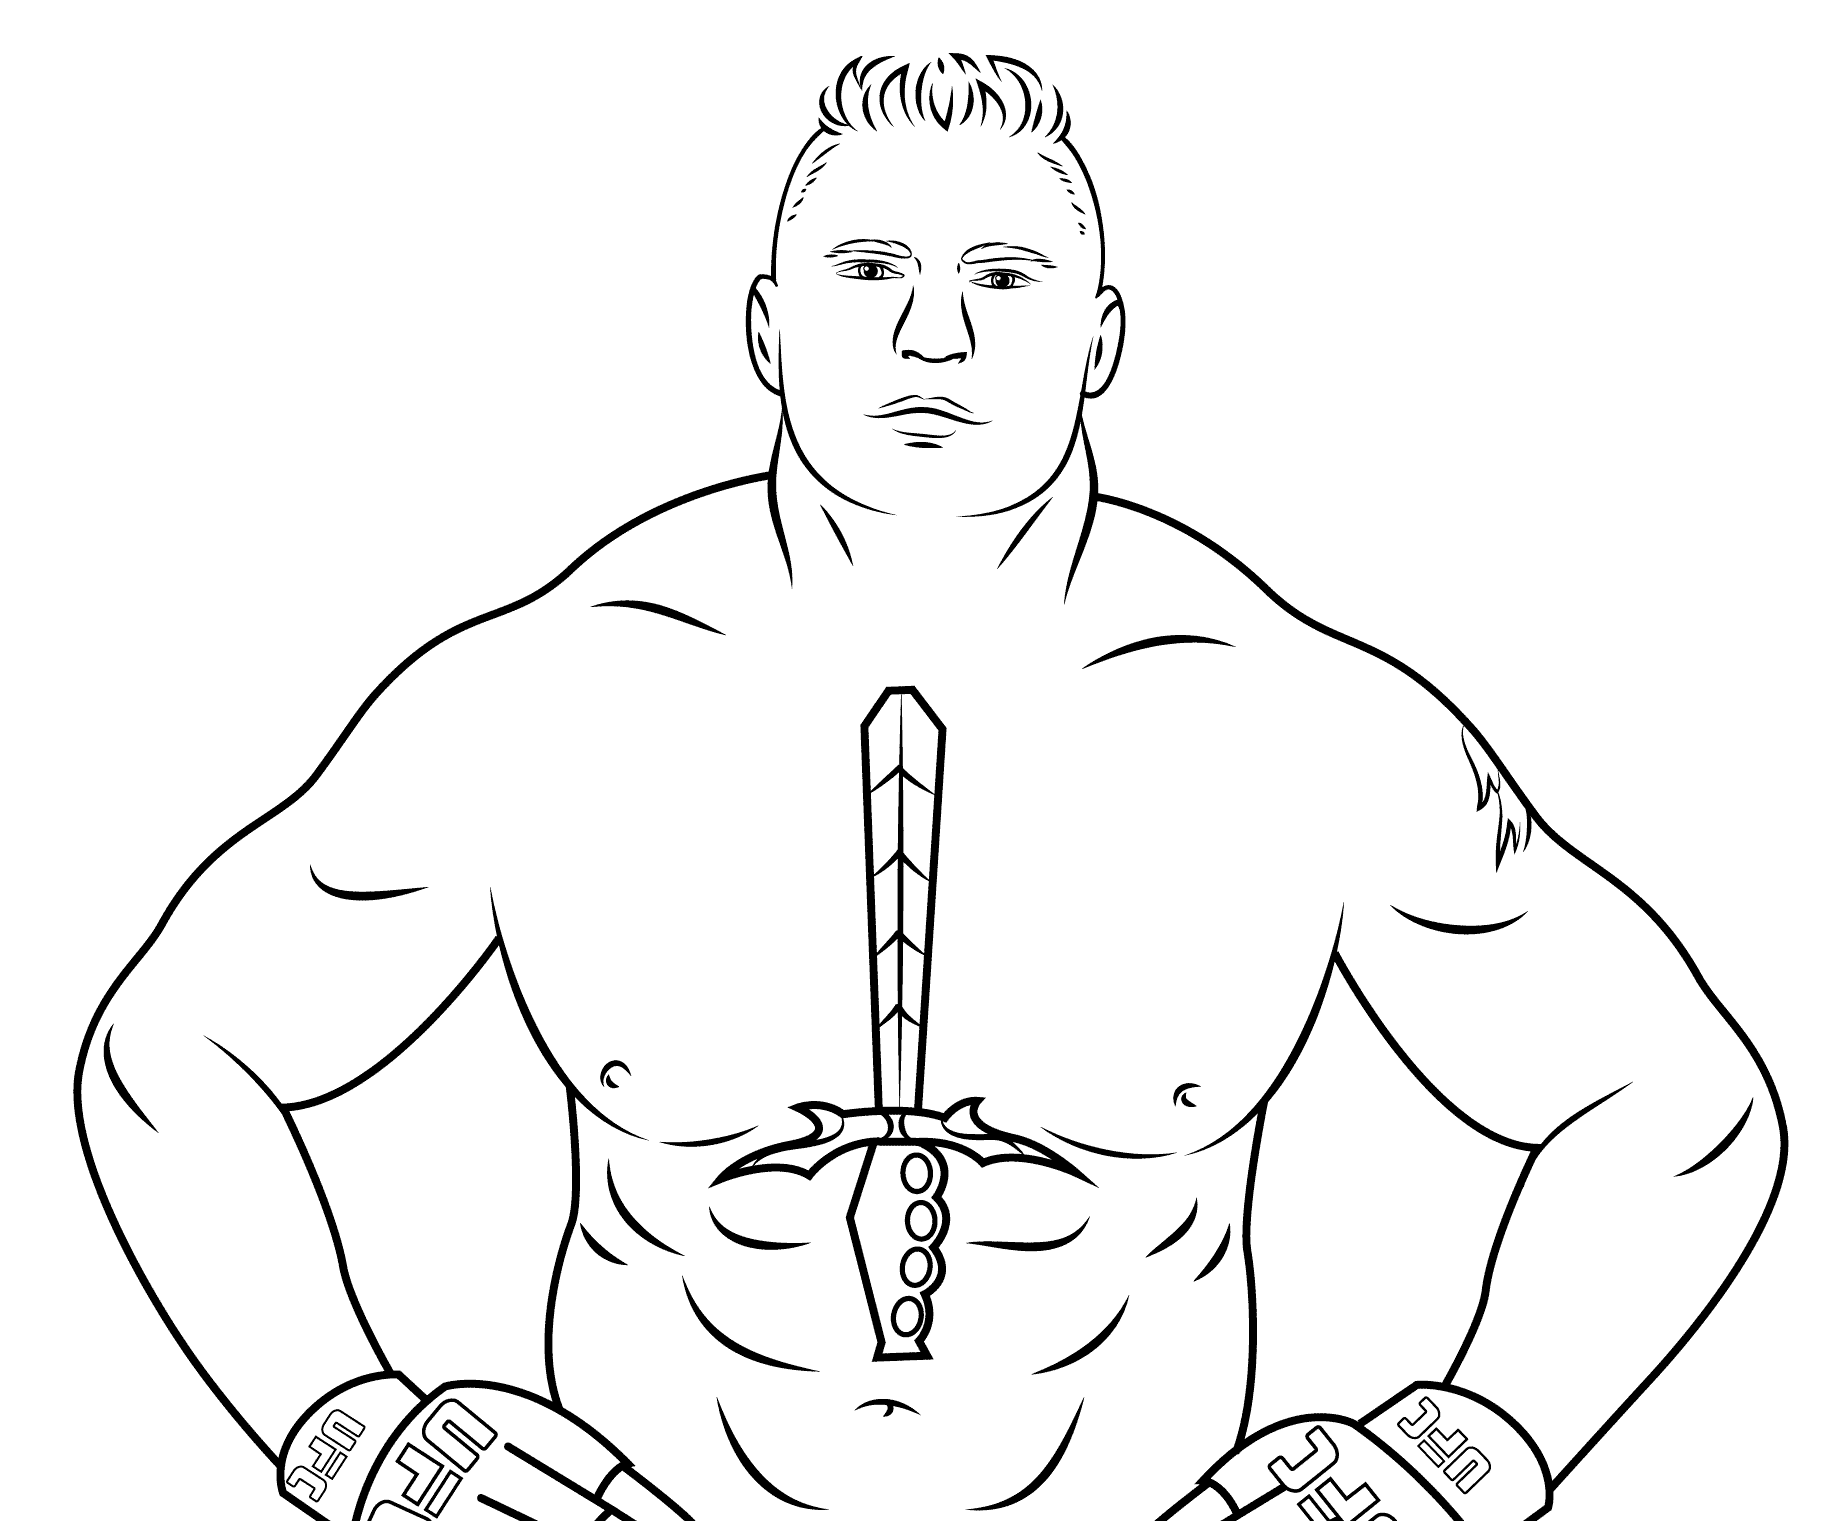 Página para colorir de Brock Lesnar da WWE